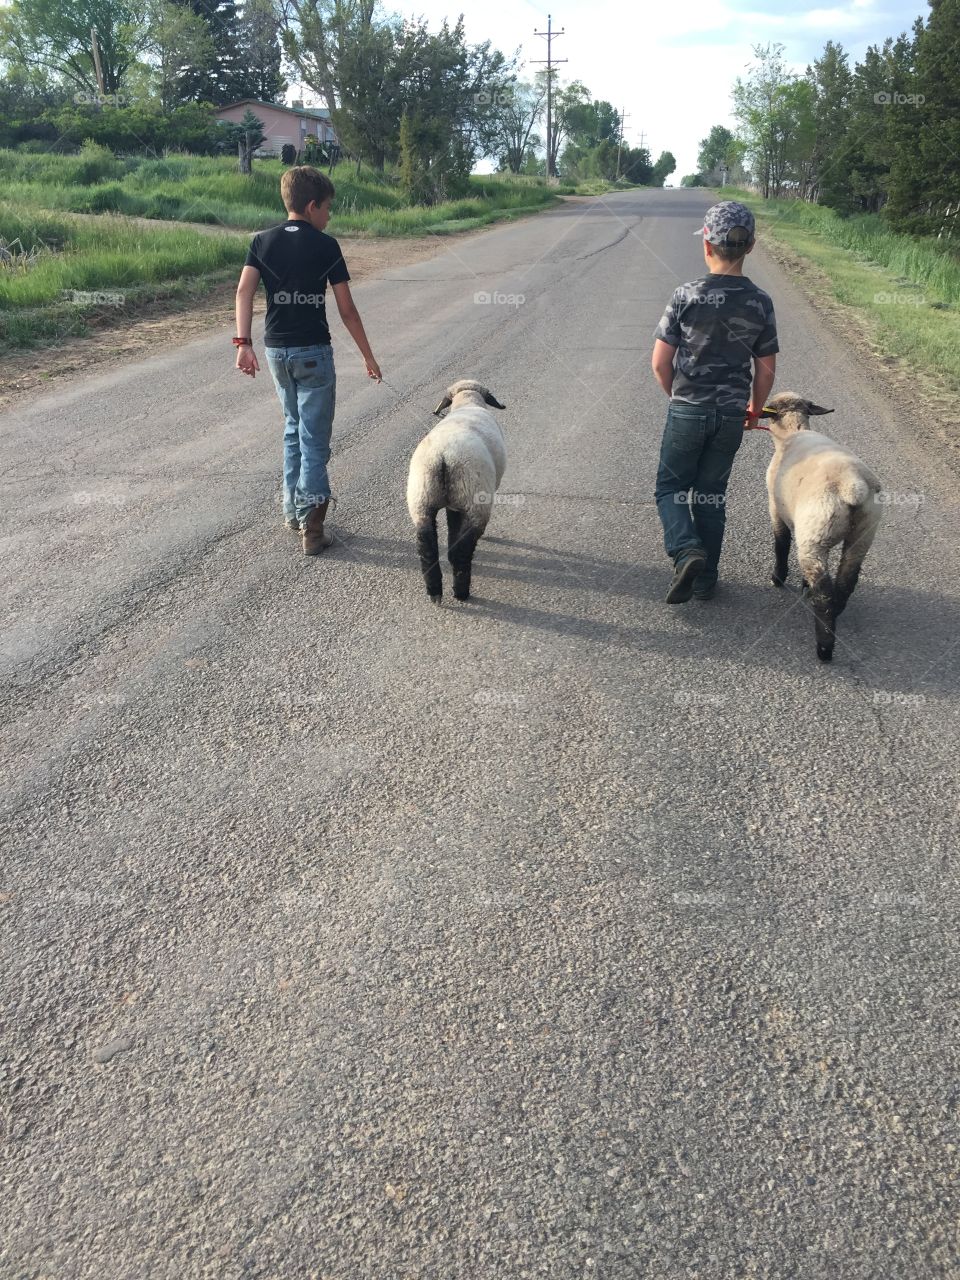 Farm boys with their pets.